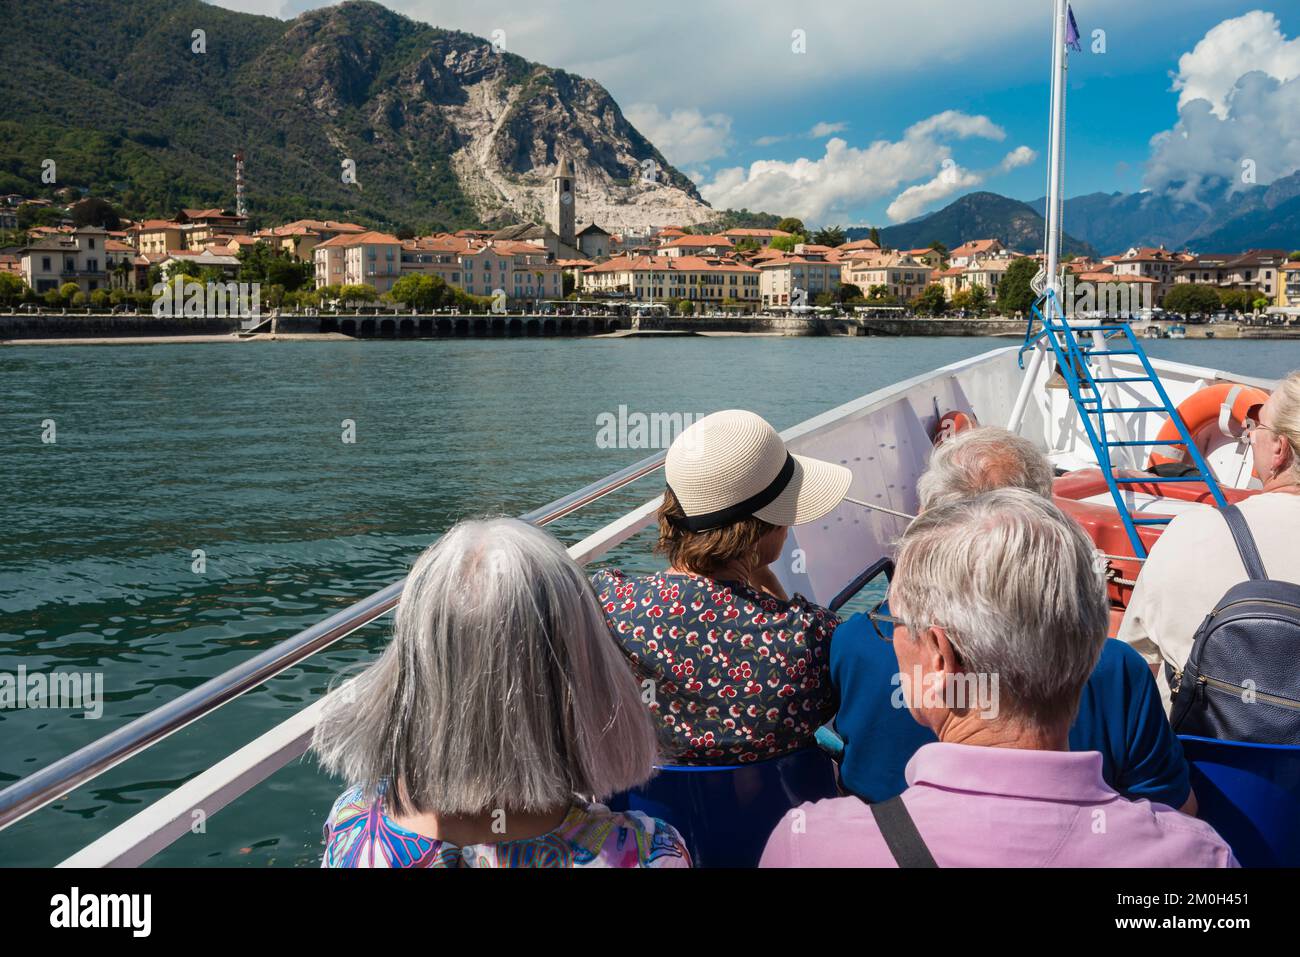 Italia Turismo de los lagos, vista trasera En verano de los pasajeros maduros a bordo de un ferry en el Lago Maggiore acercándose a la ciudad a orillas del lago de Baveno, Piamonte, Italia Foto de stock